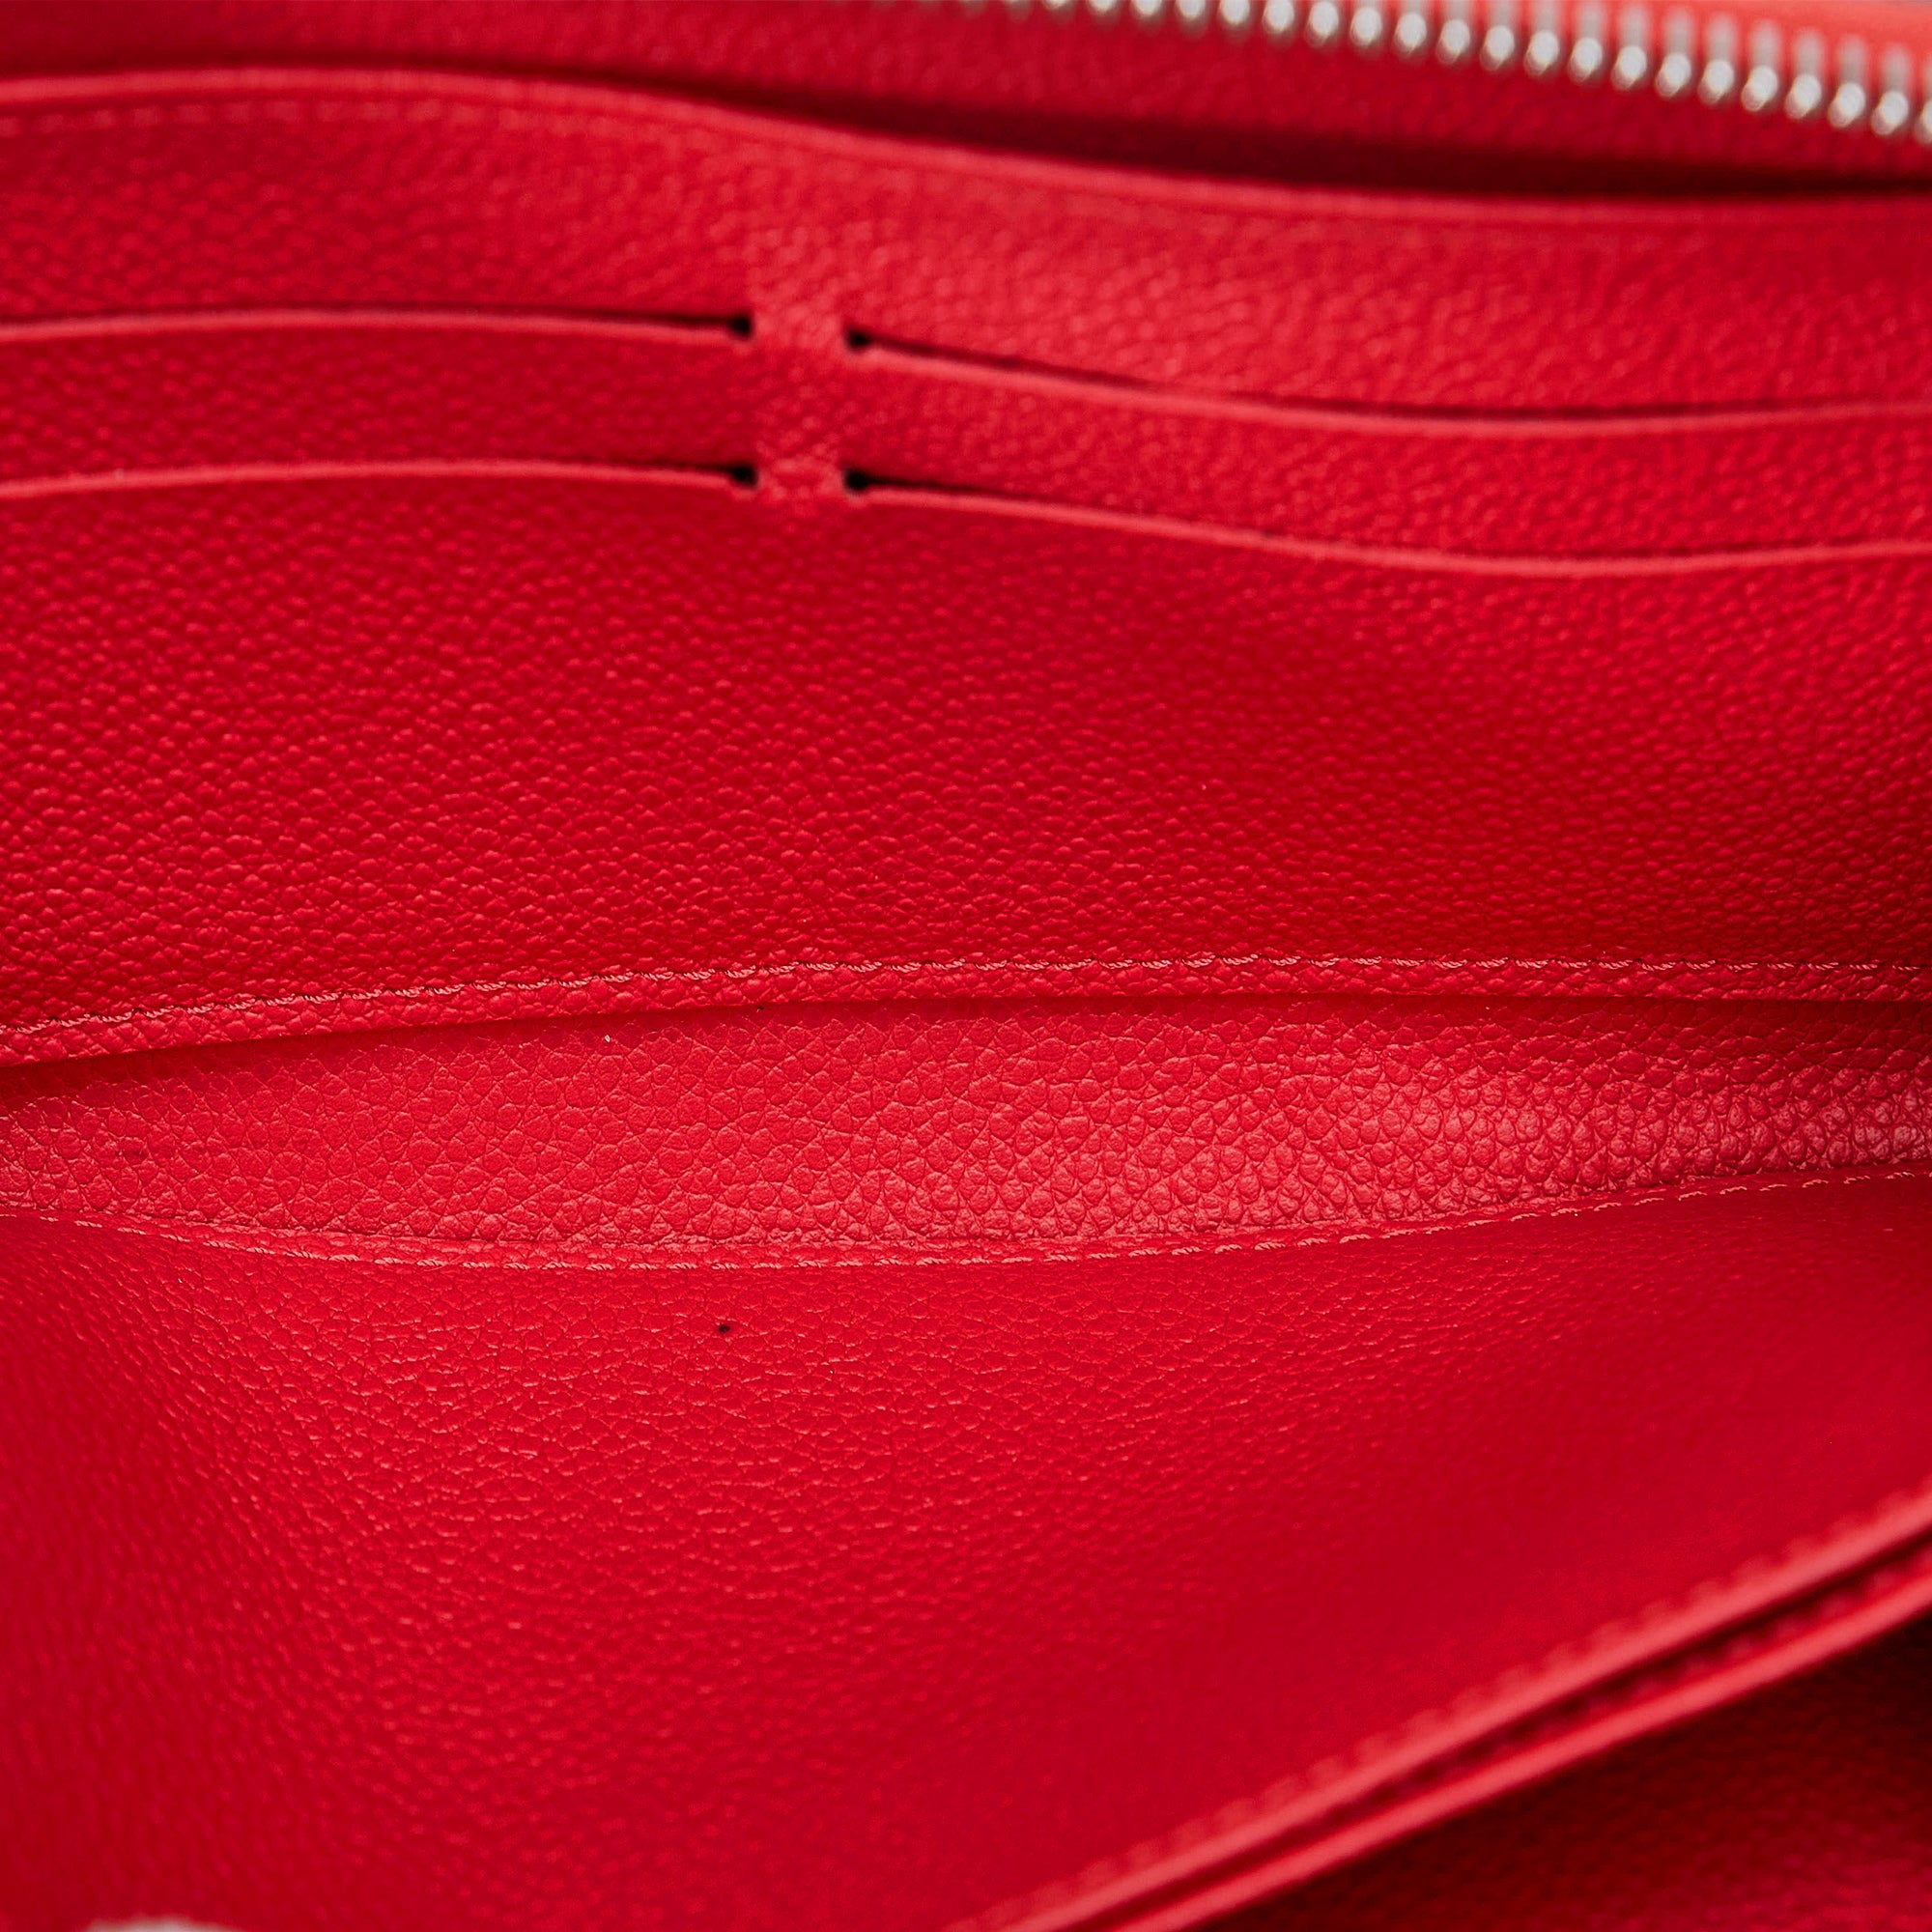 ❤️NEW LOUIS VUITTON Zip Coin Wallet Pouch Navy Red Empreinte Leather  Monogram